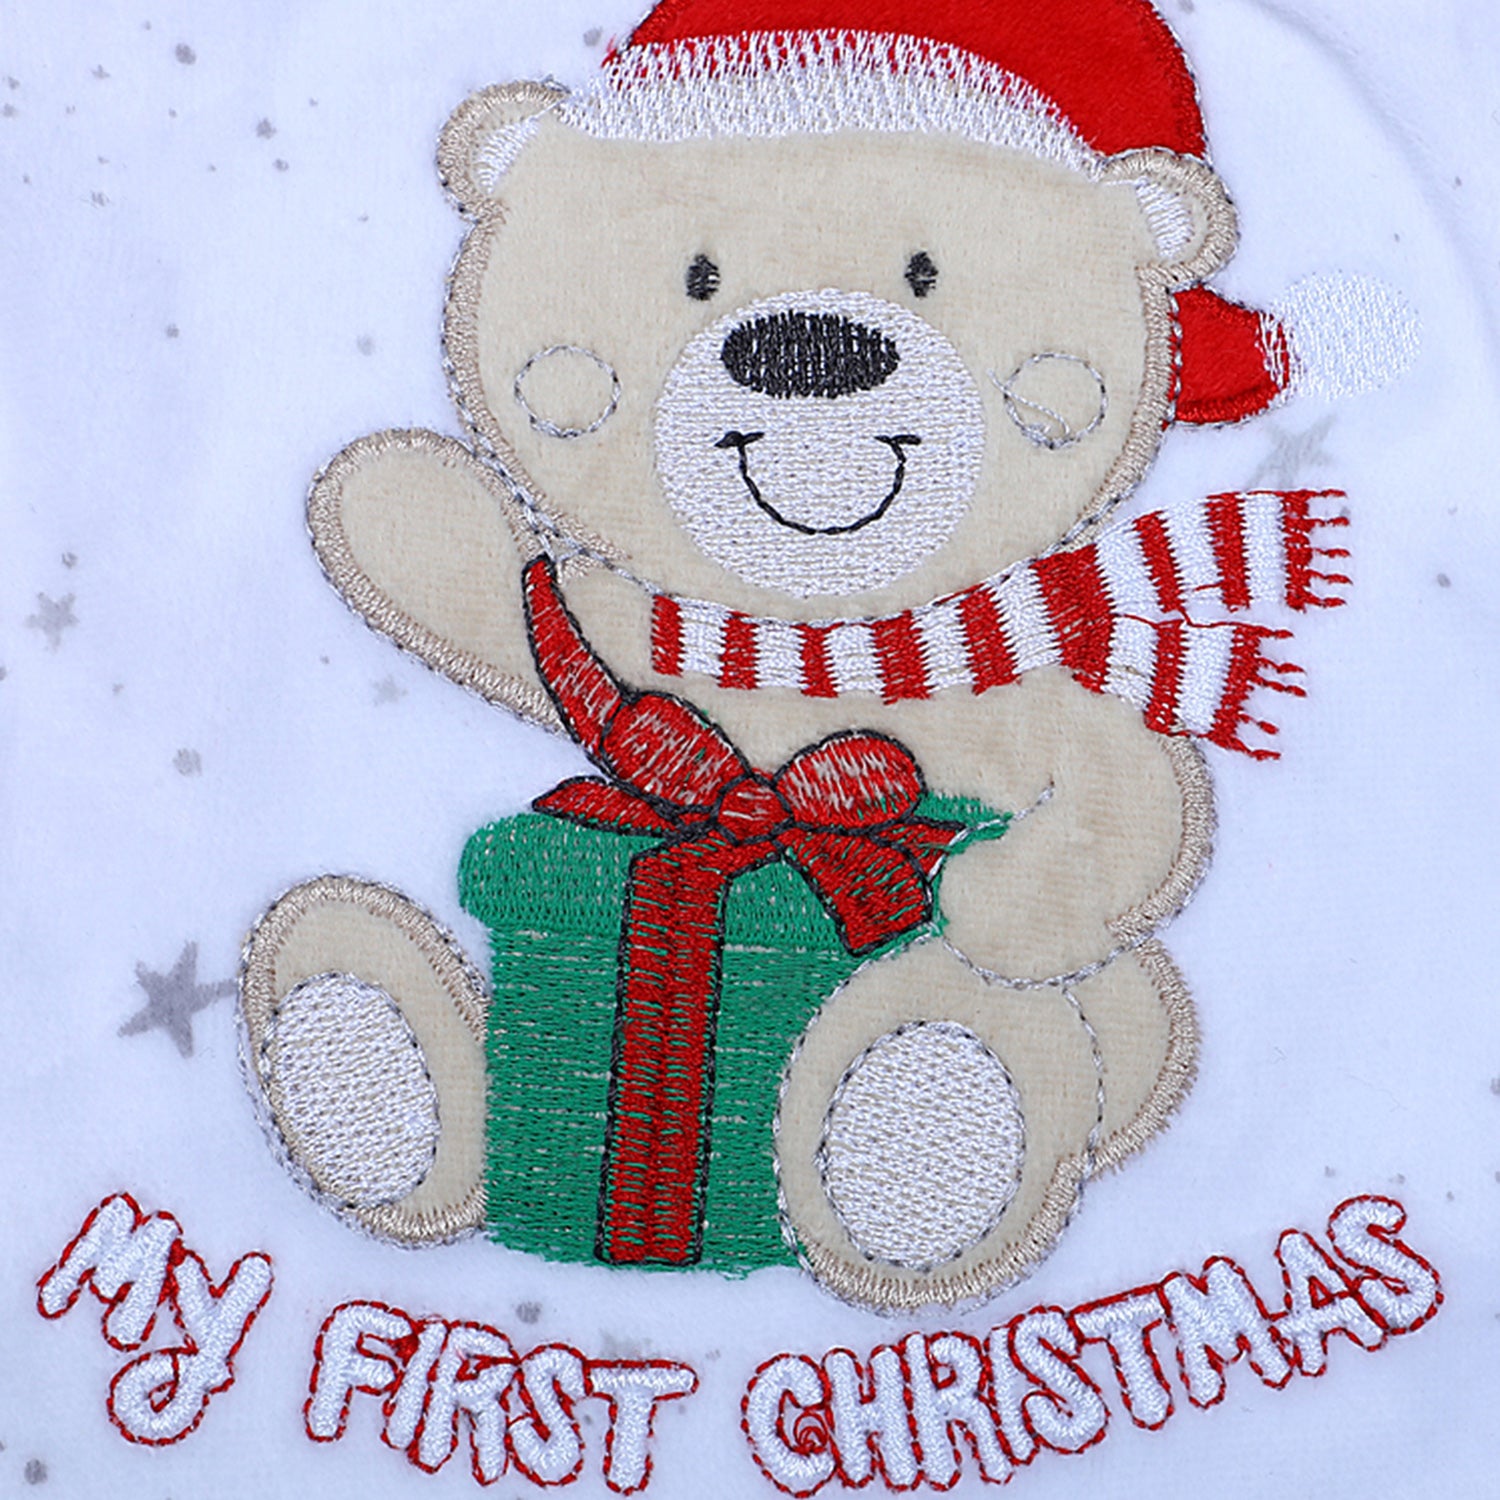 Santa's Favourite Infant Full Sleeves Snap Button Bodysuit Romper - White